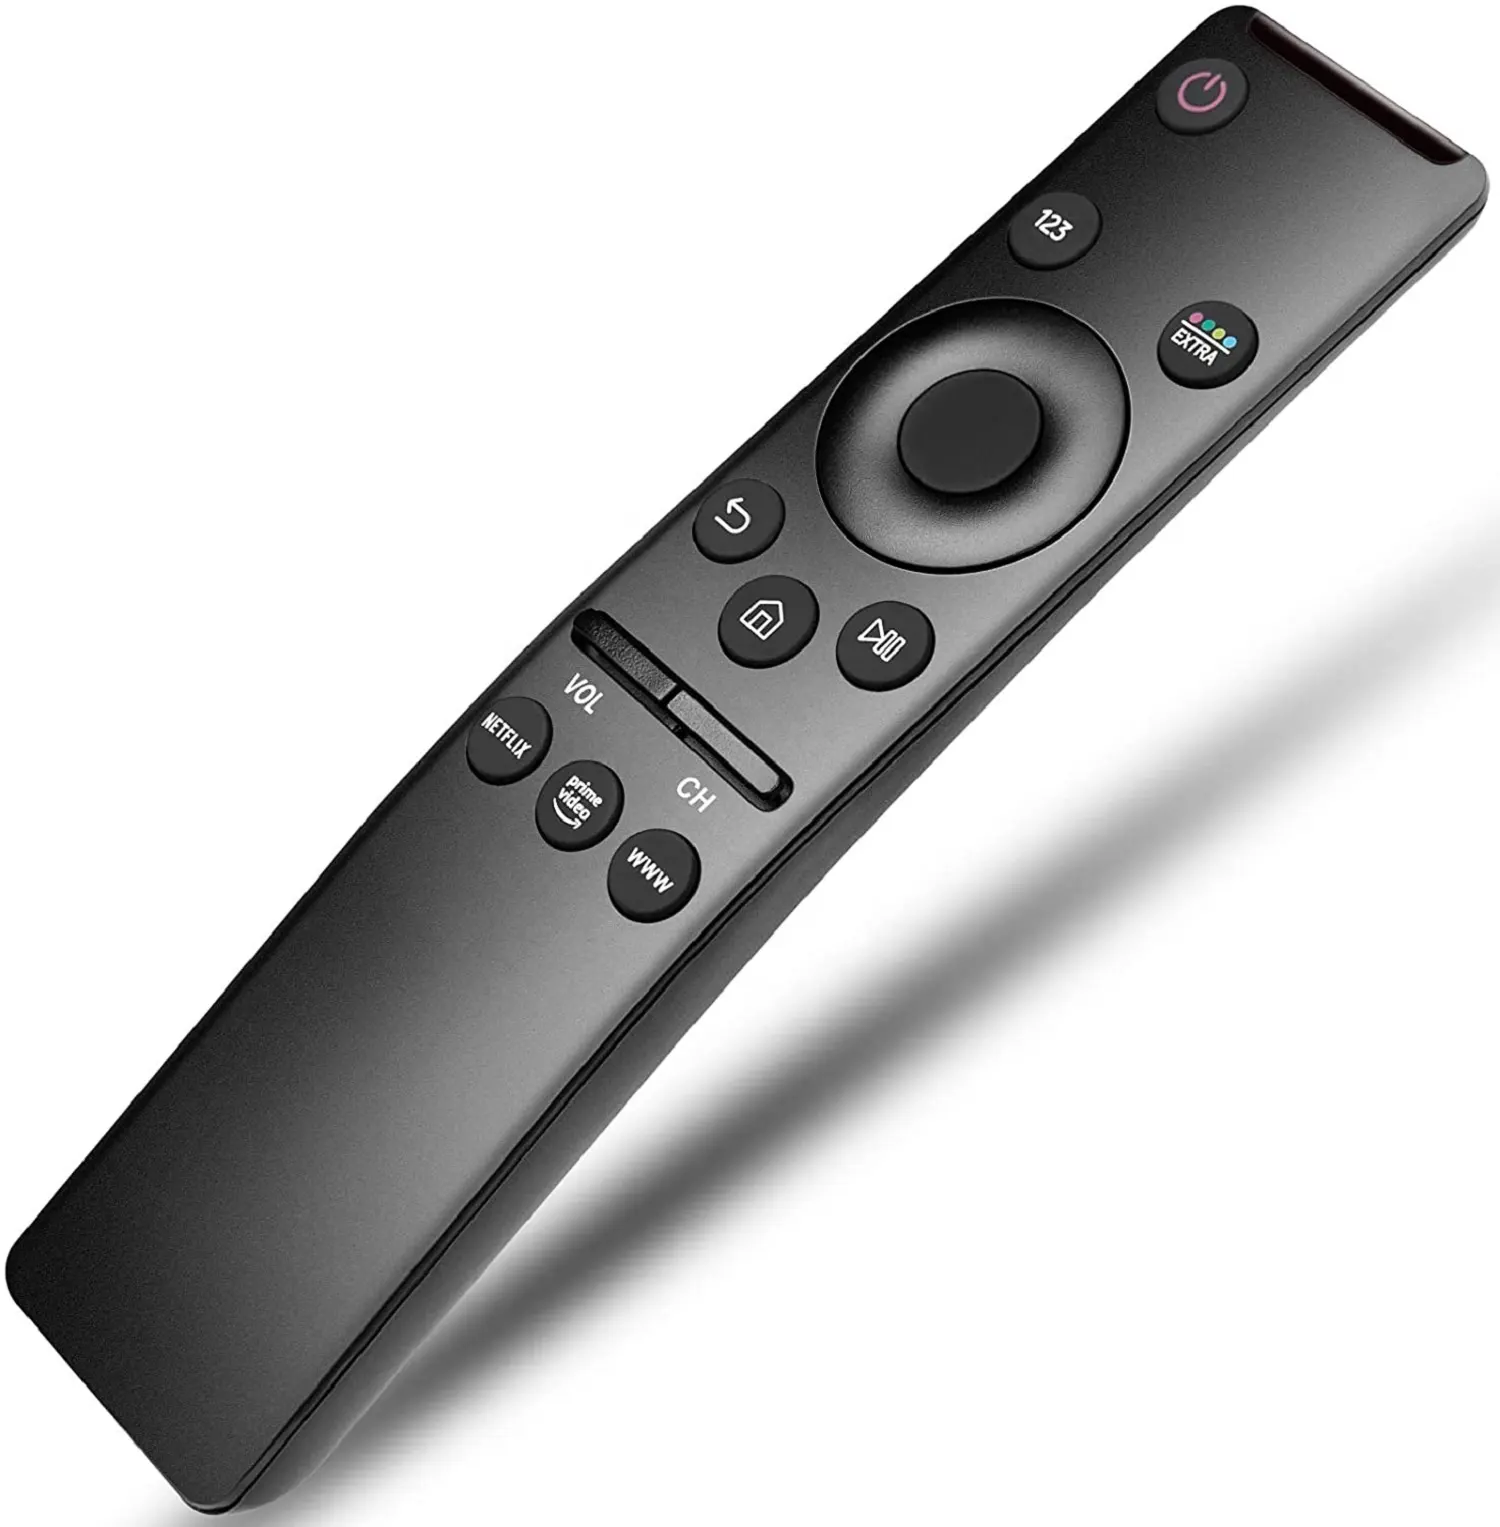 รีโมทคอนโทรล BN59-01312F แบบสากลสำหรับทีวีซัมซุงแอลอีดี lcdhdtv 4 8K 3D สมาร์ททีวี Netflix Prime วีดีโอ WWW